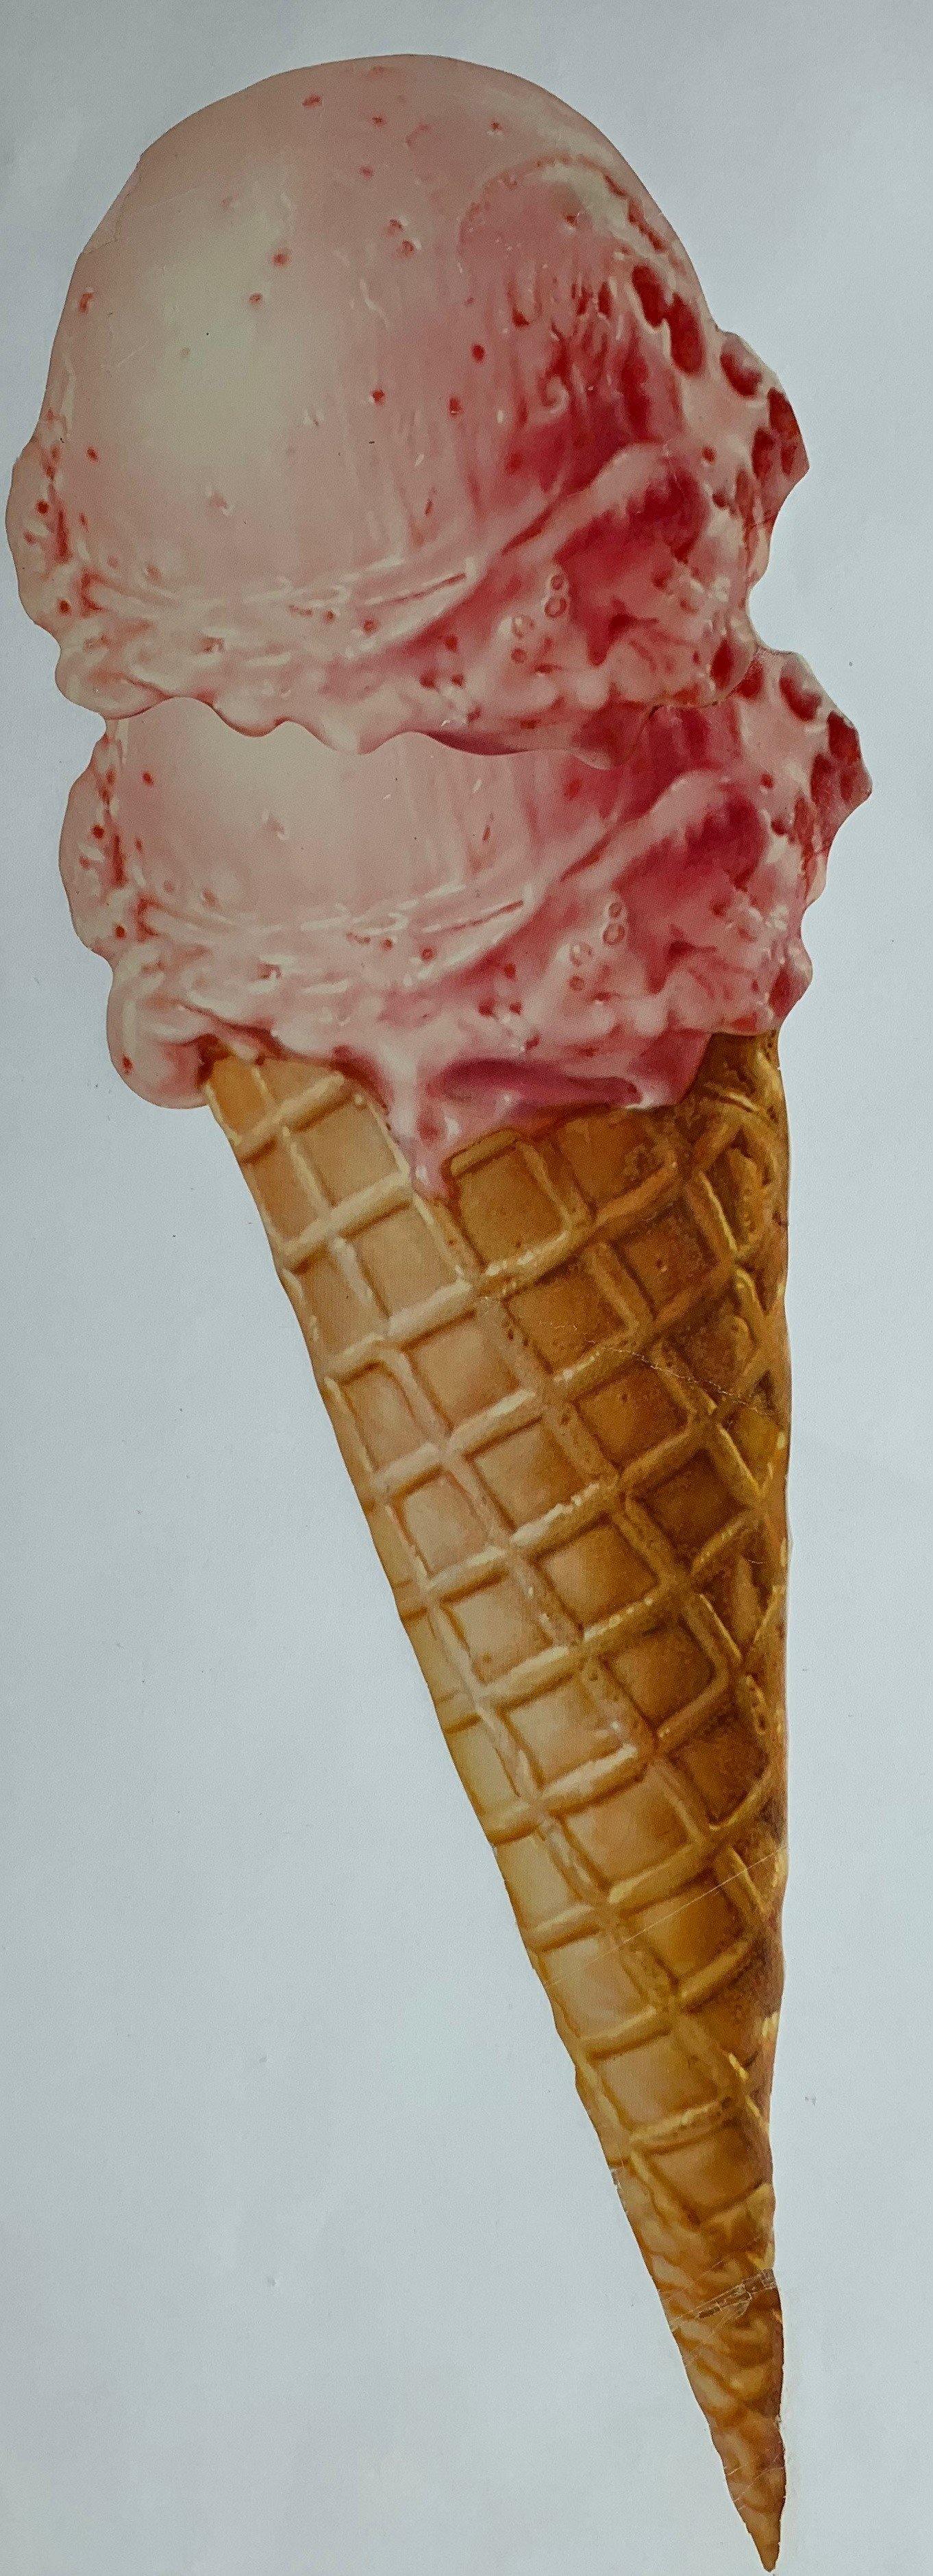 Double Scoop Ice Cream Cone